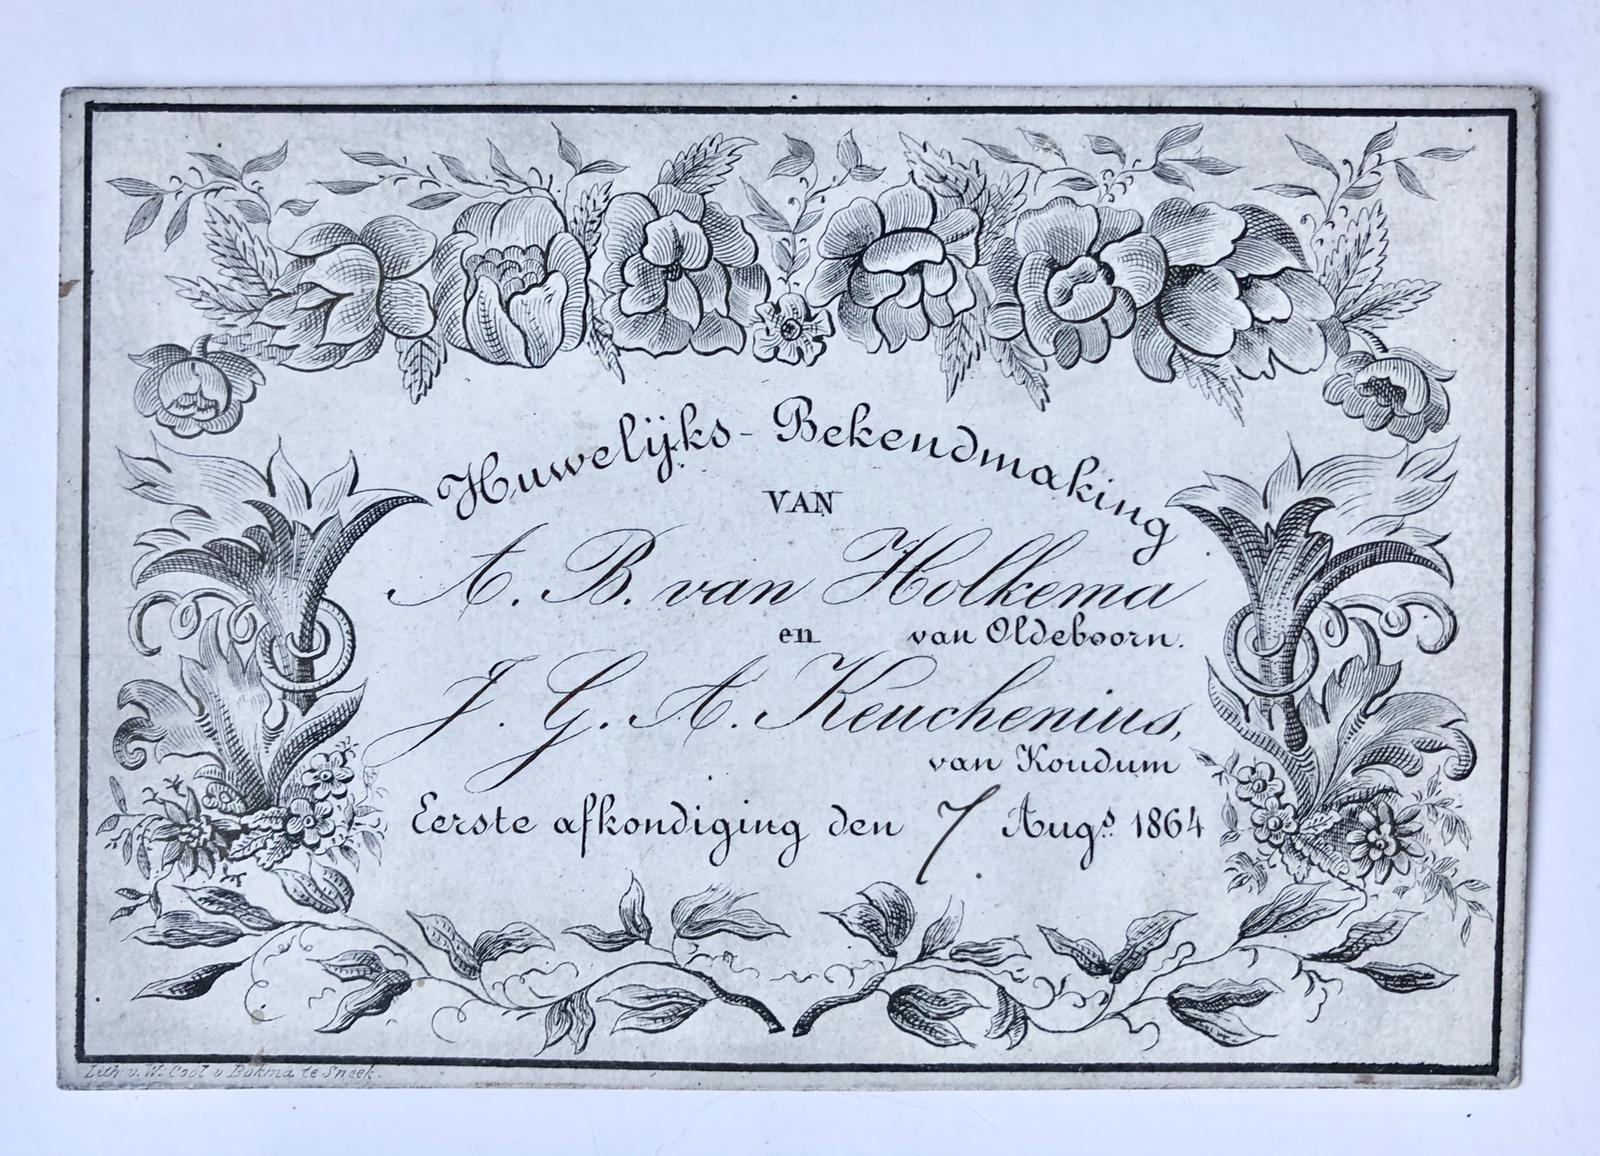 [Marriage announcement, 1864] 'Huwelijks-bekendmaking' van A.B. van Holkema van Oldeboorn en J.G.A. Keuchenius van Koudum, 1864. Fraai gegraveerd porseleinkaartje (lith. W. Cool v. Bokma te Sneek).